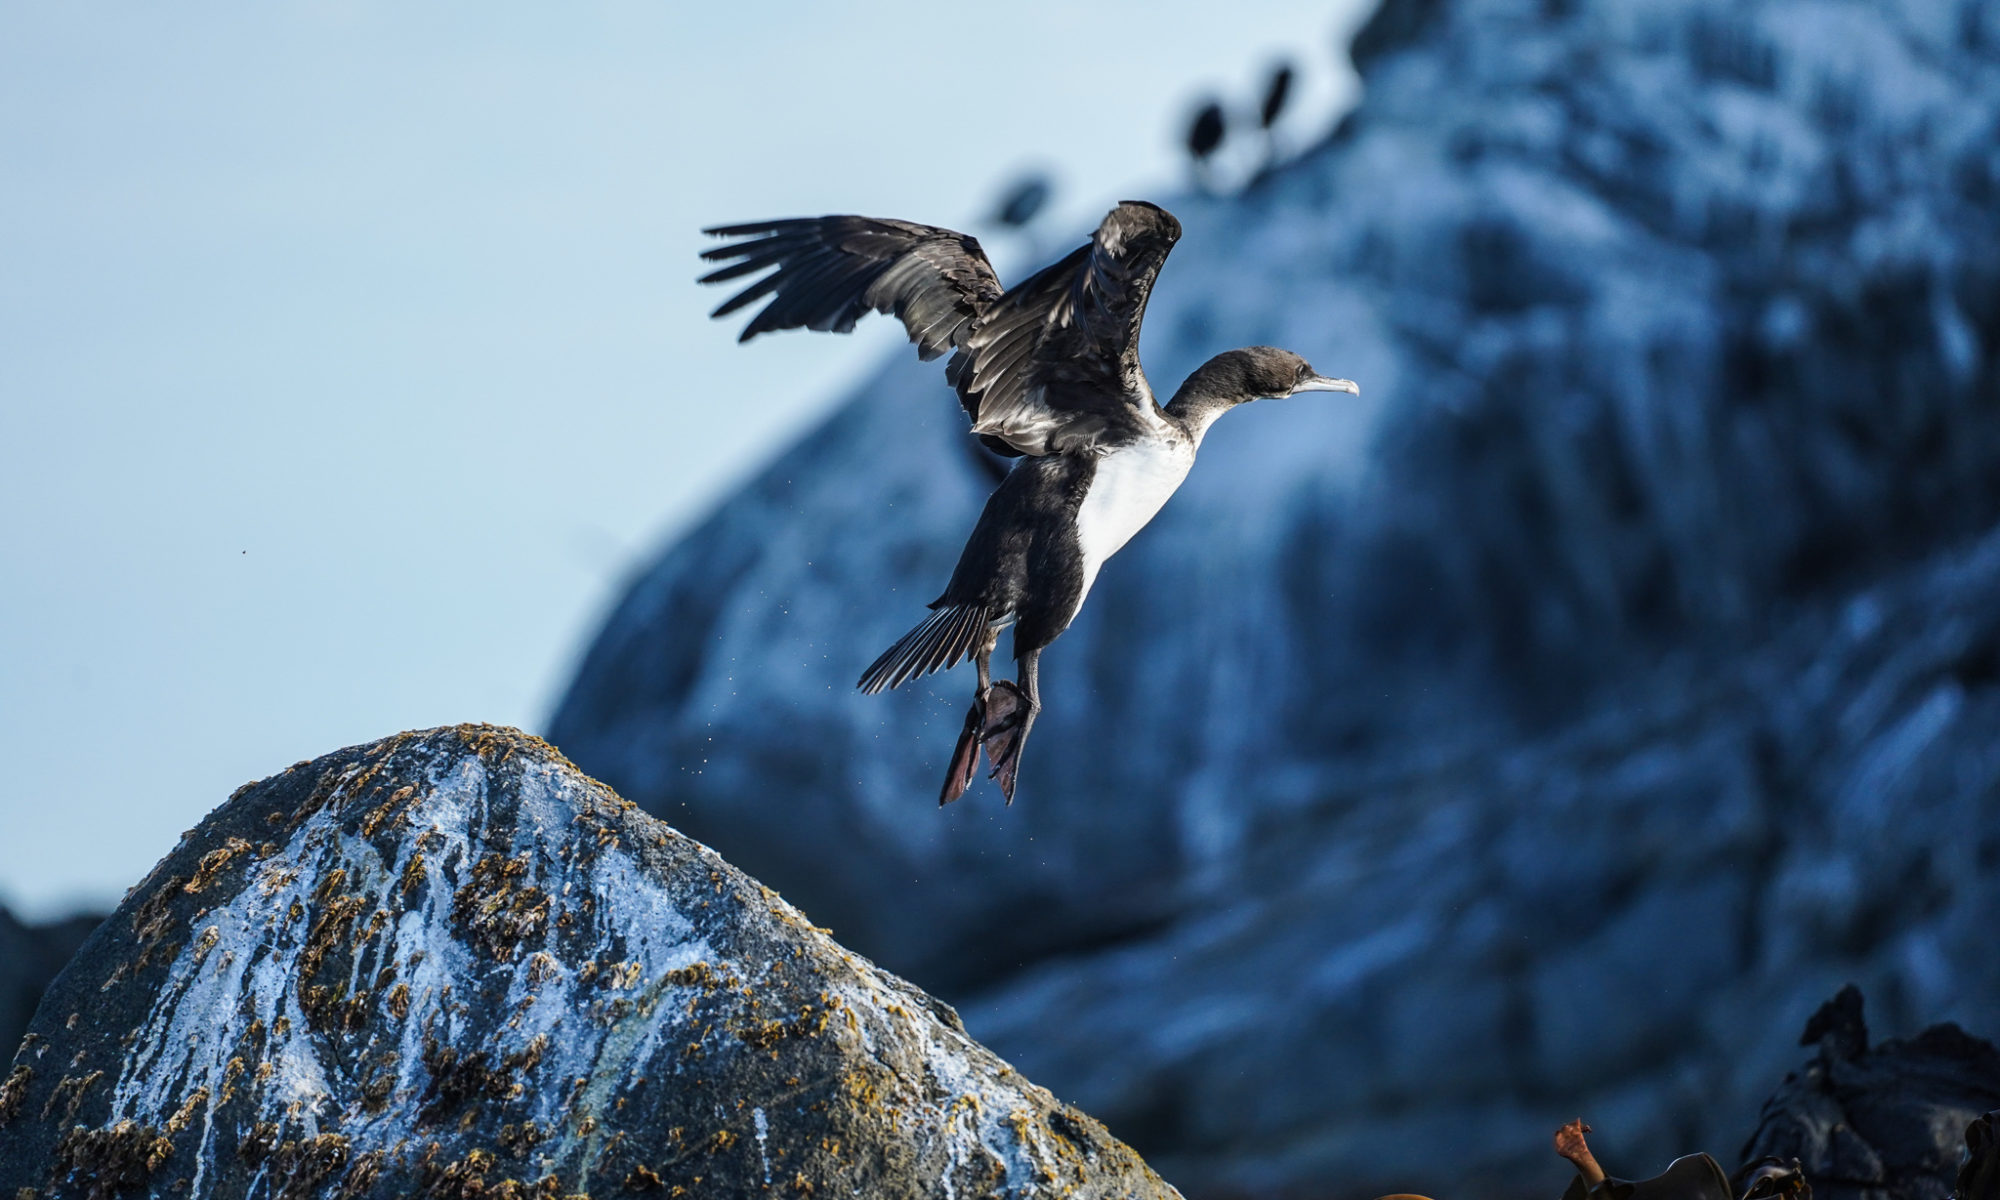 Stewart Island/Foveaux Cormorant taking flight